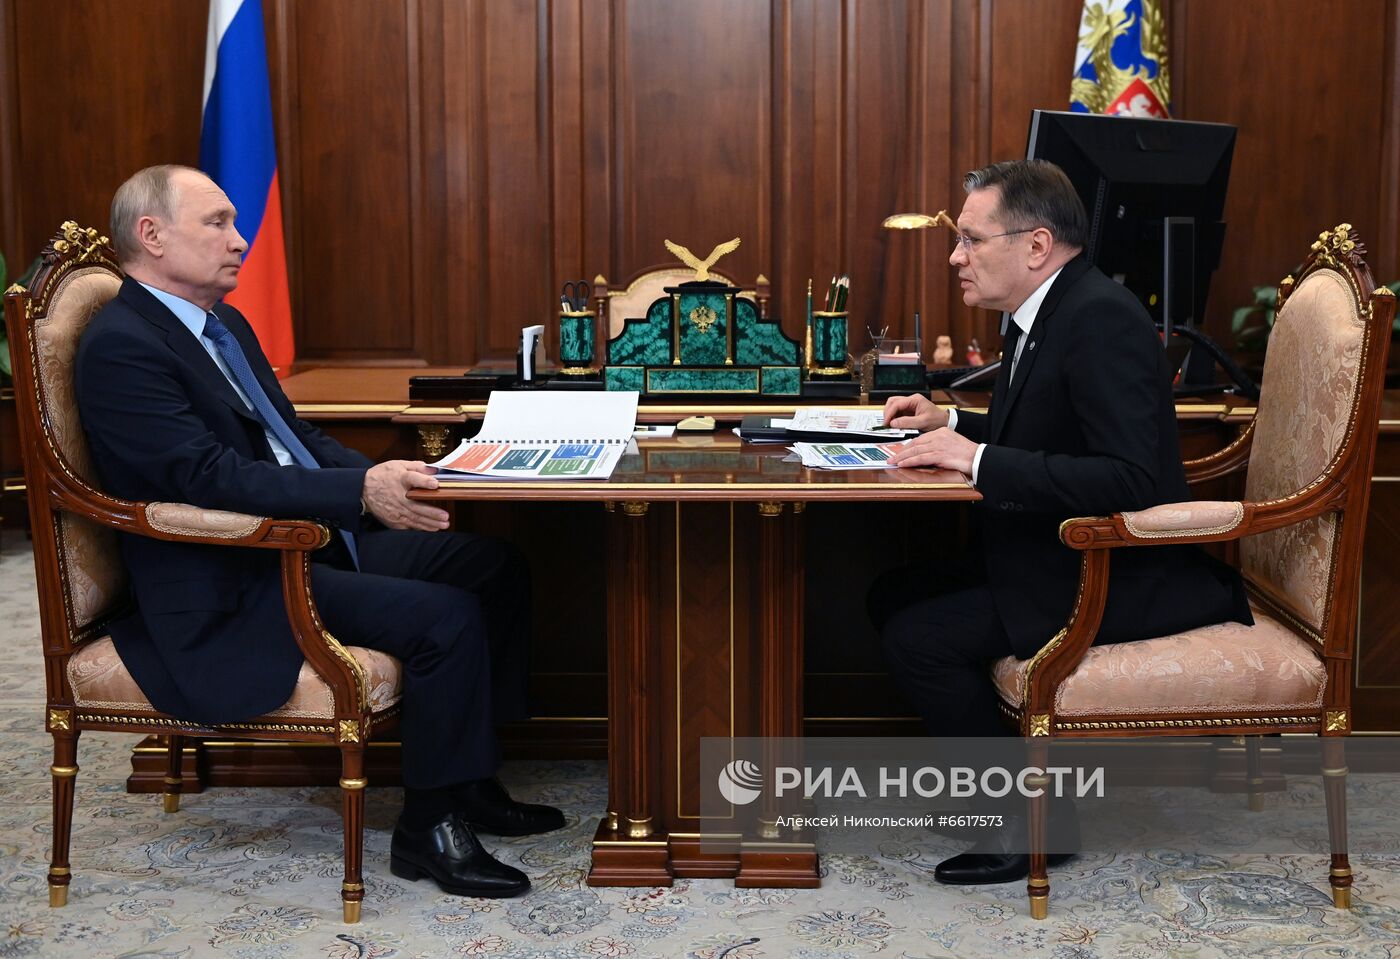 Президент РФ В. Путин встретился с руководителем ГК "Росатом" А. Лихачевым